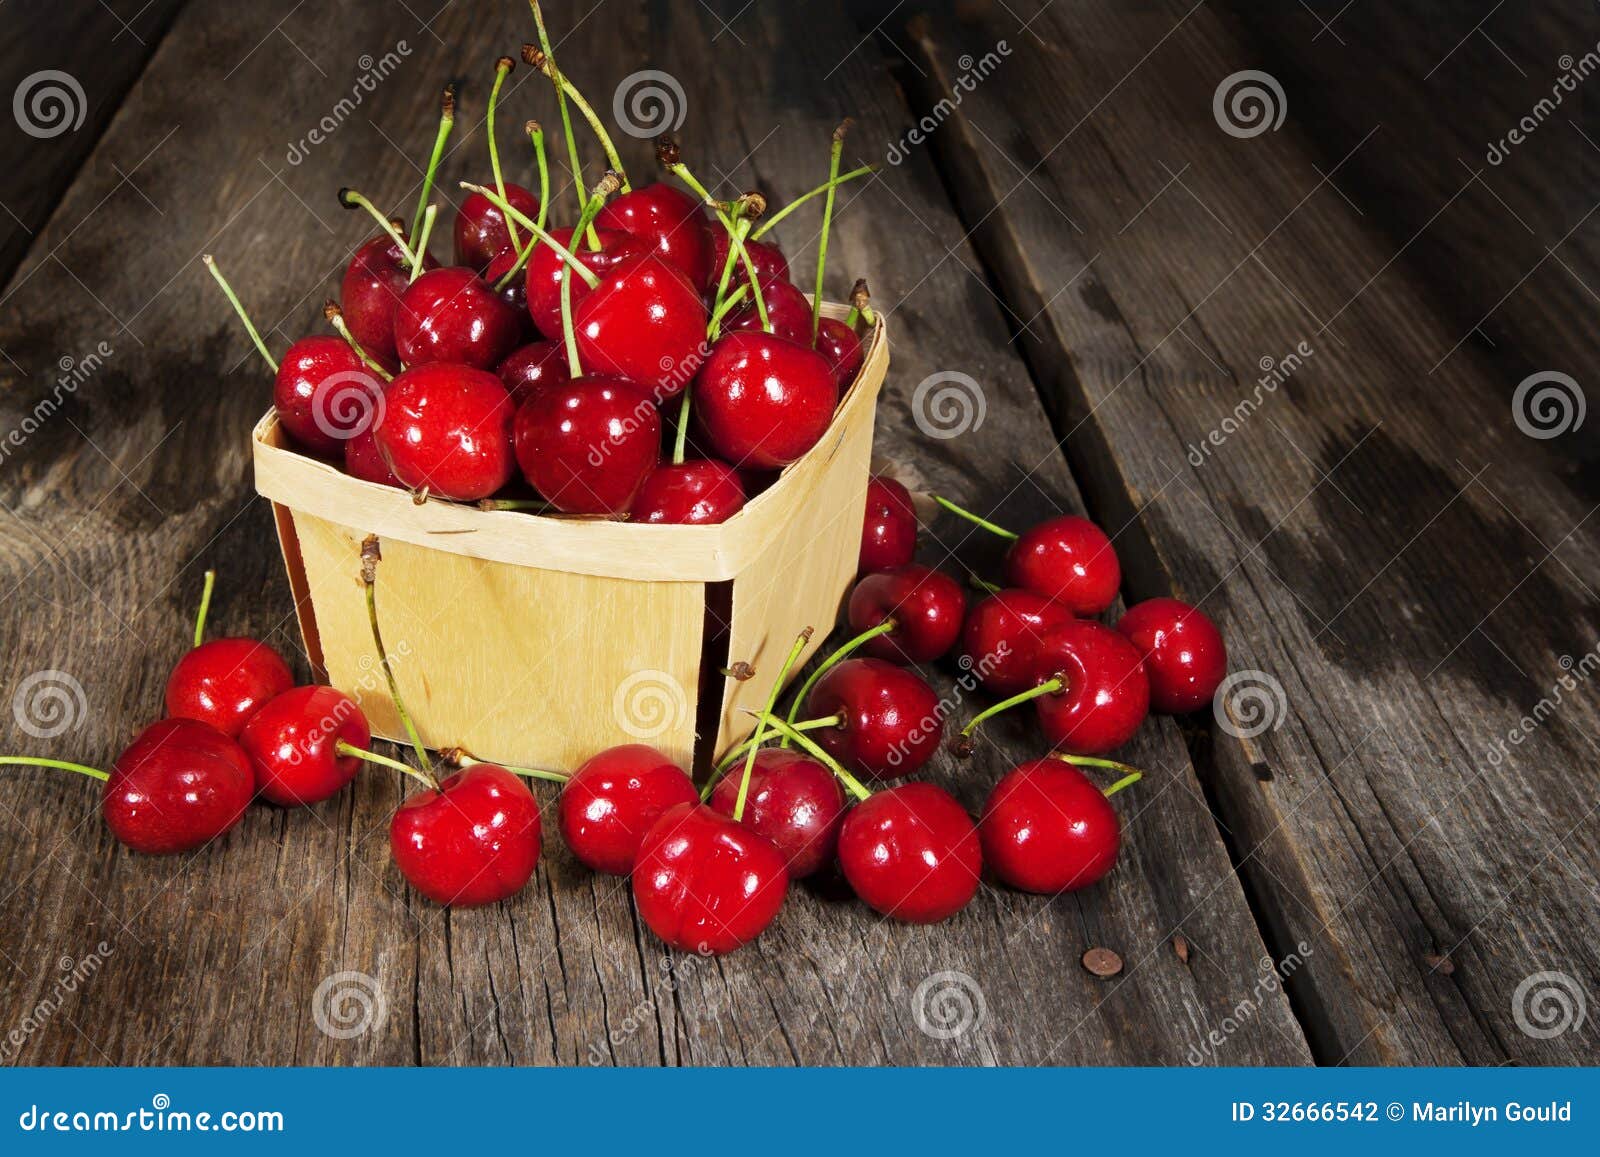 sweet bing cherries wood basket